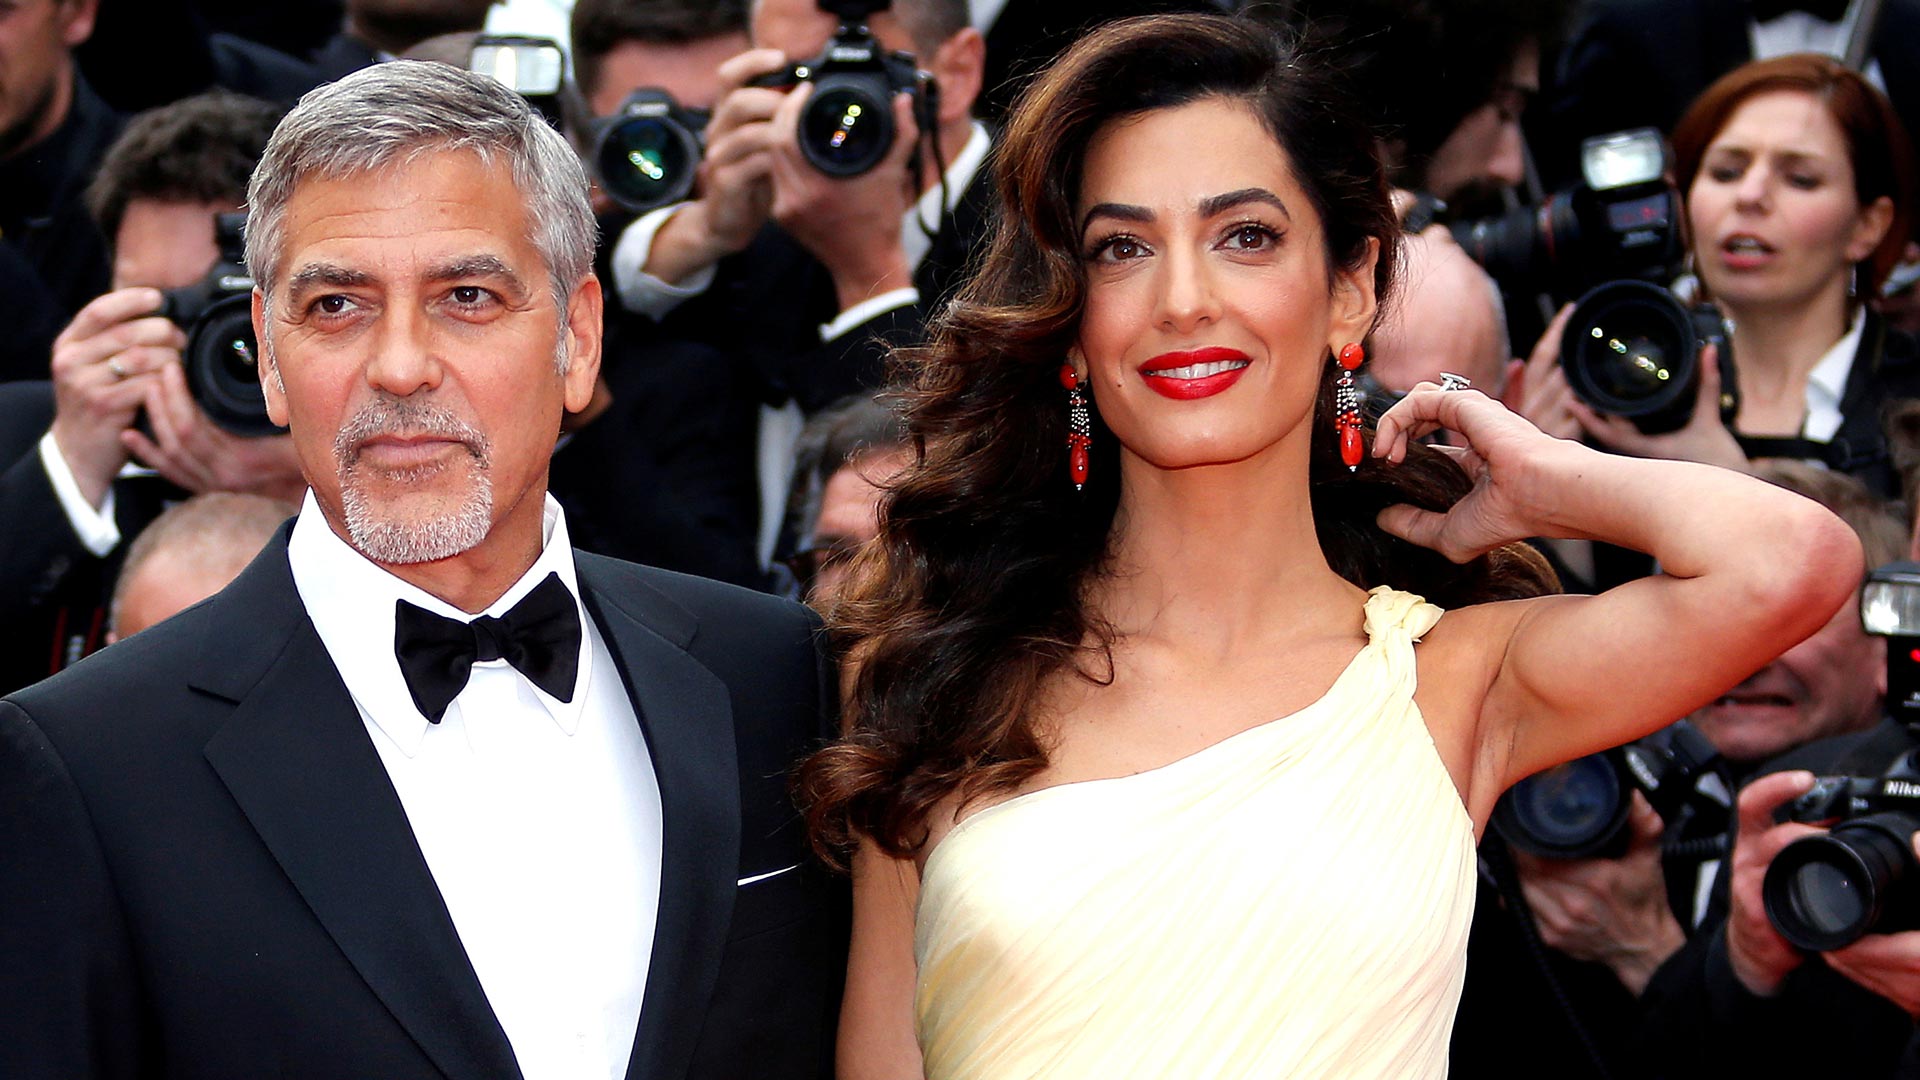 George Clooney y su esposa pagarán la educación de 3.000 niños refugiados